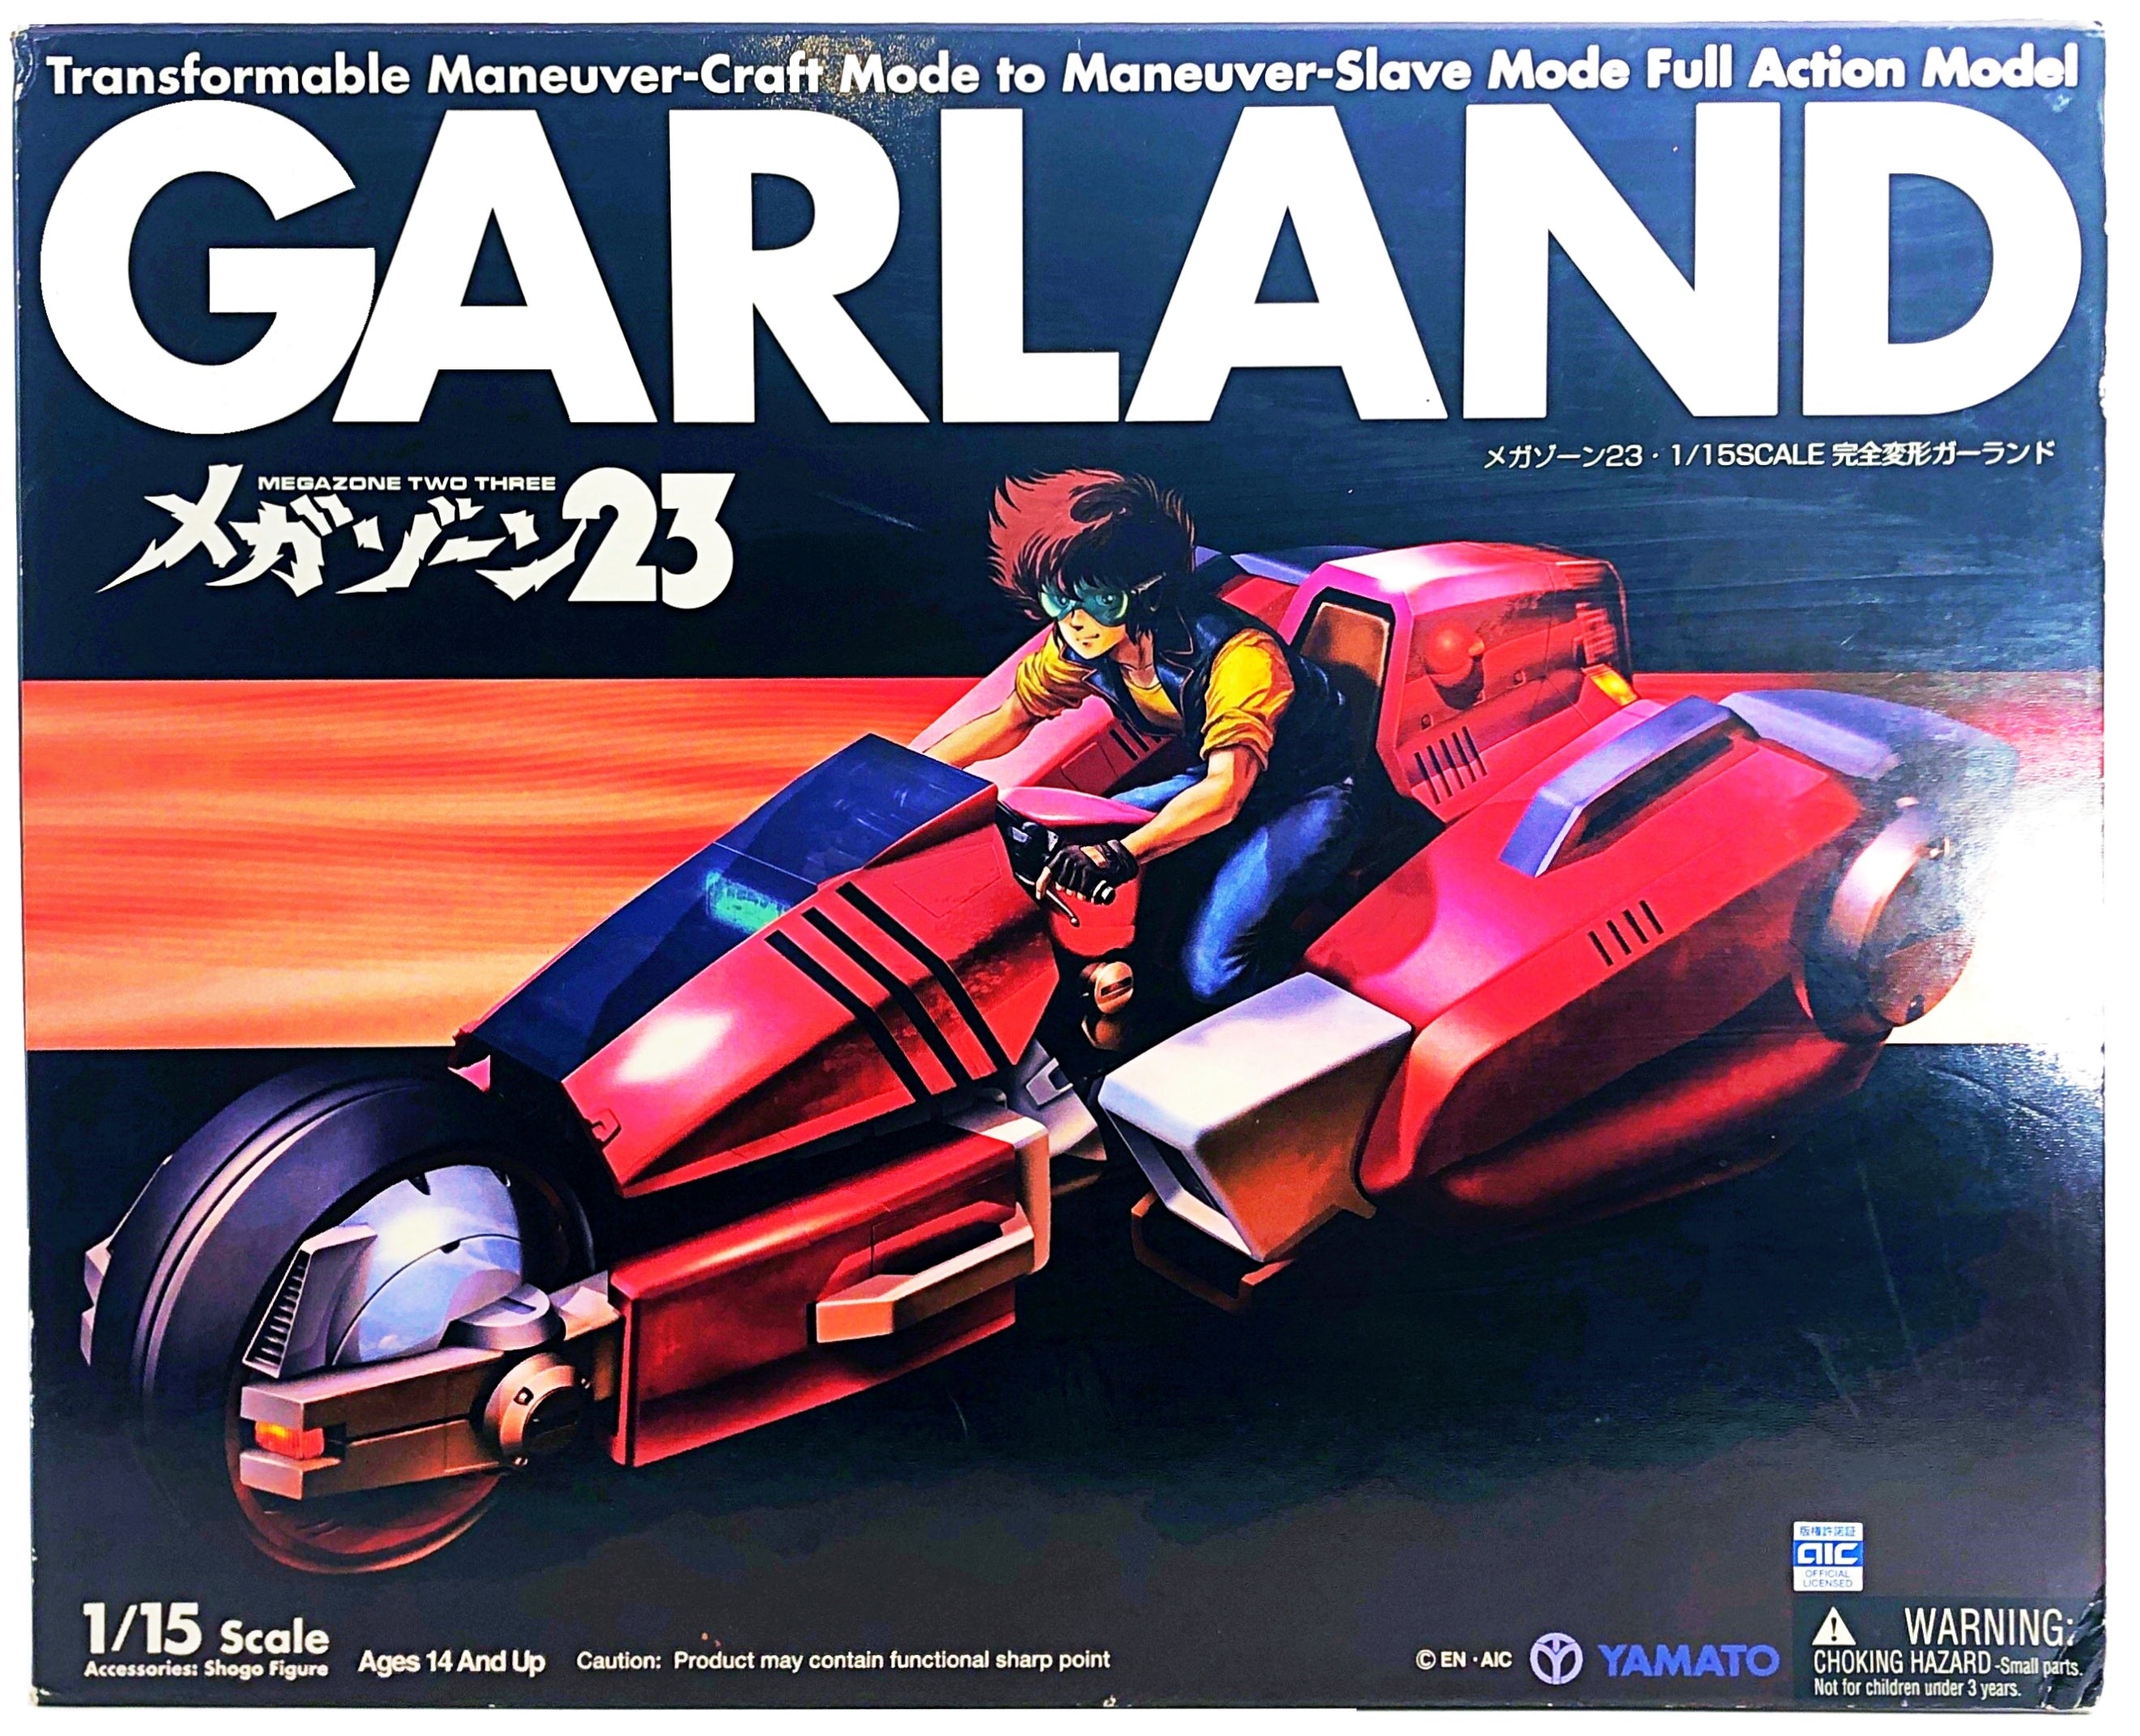 Megazone 23 Garland 1/15 Scale (Yamato, 2006) - 0